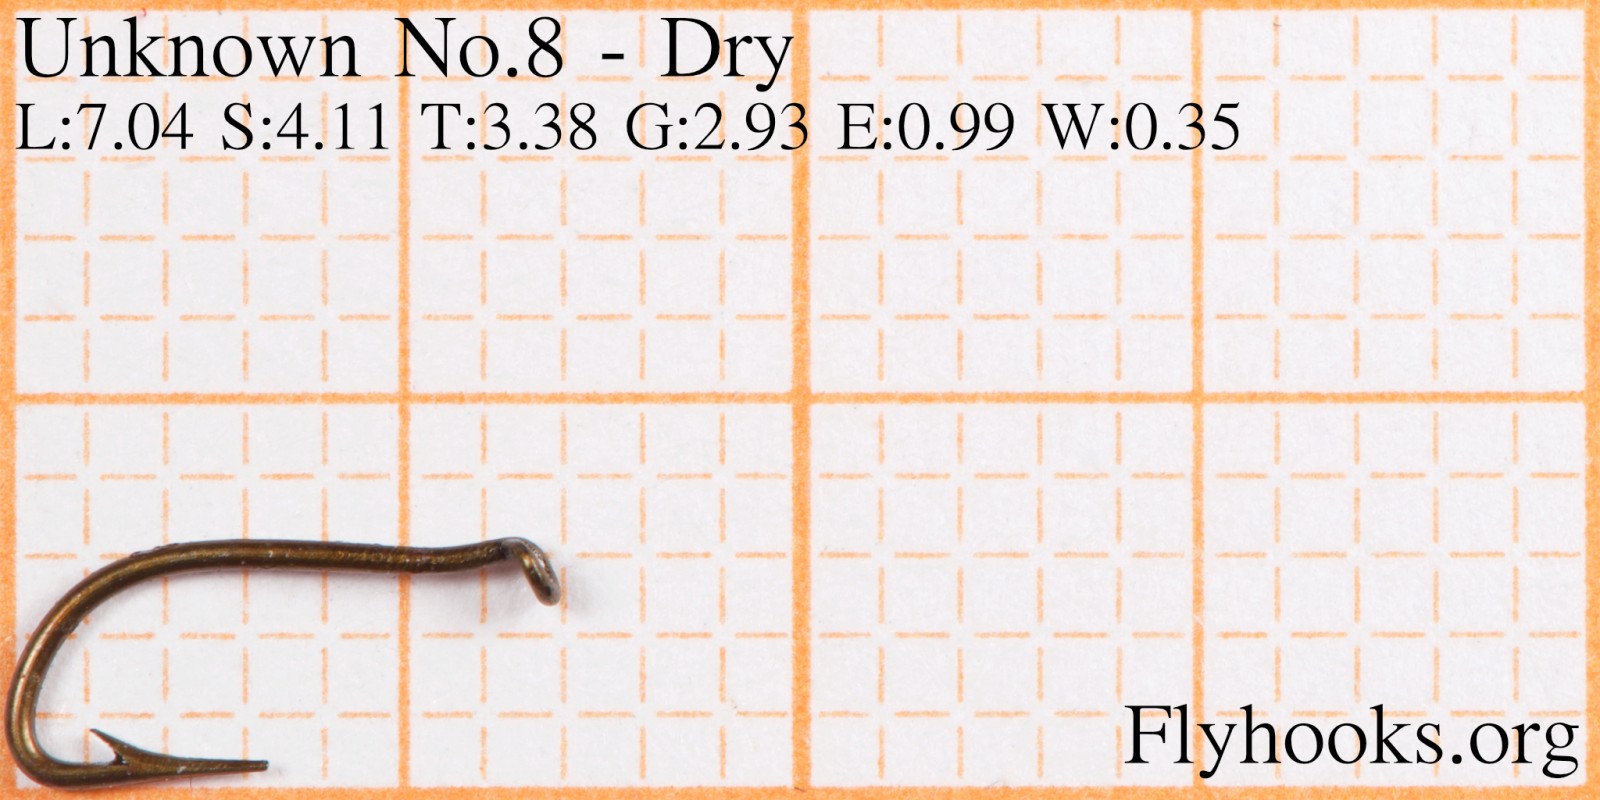 No.8 - Dry